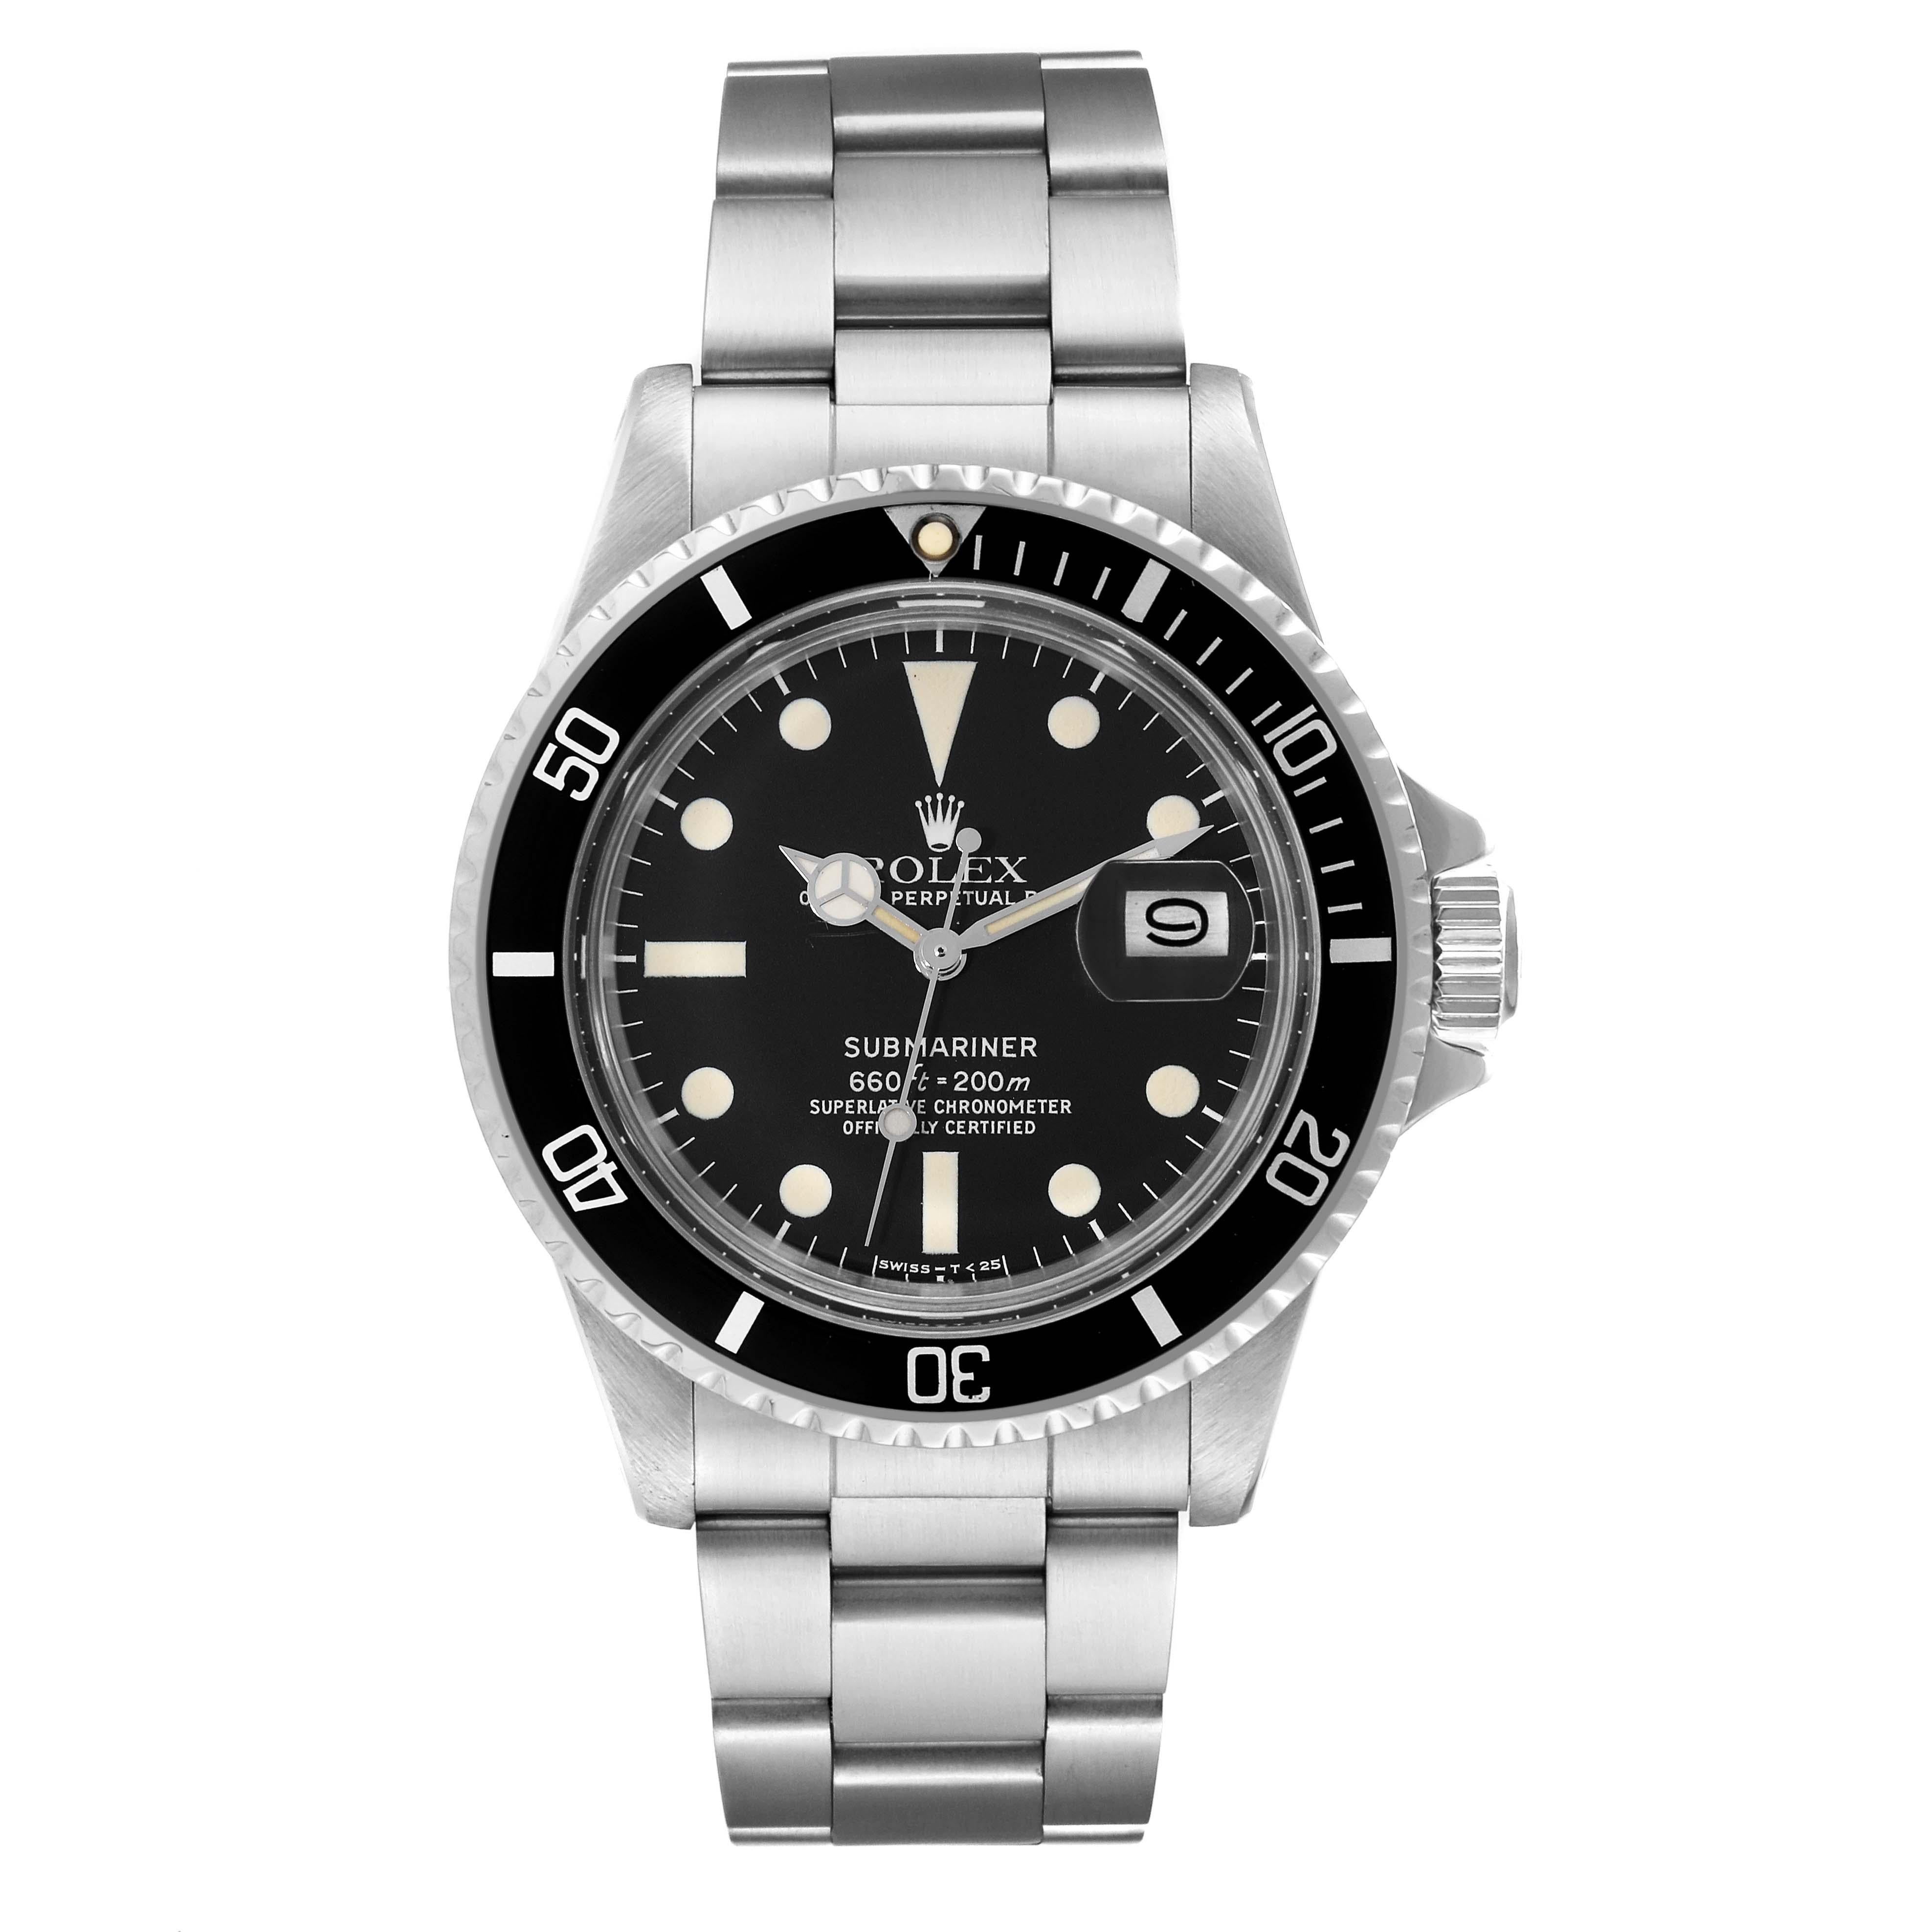 Rolex Submariner Date Steel Black Dial Mens Vintage Watch 1680. Mouvement automatique à remontage automatique, officiellement certifié chronomètre. Boîtier en acier inoxydable de 40 mm de diamètre. Acier inoxydable avec la lunette tournante